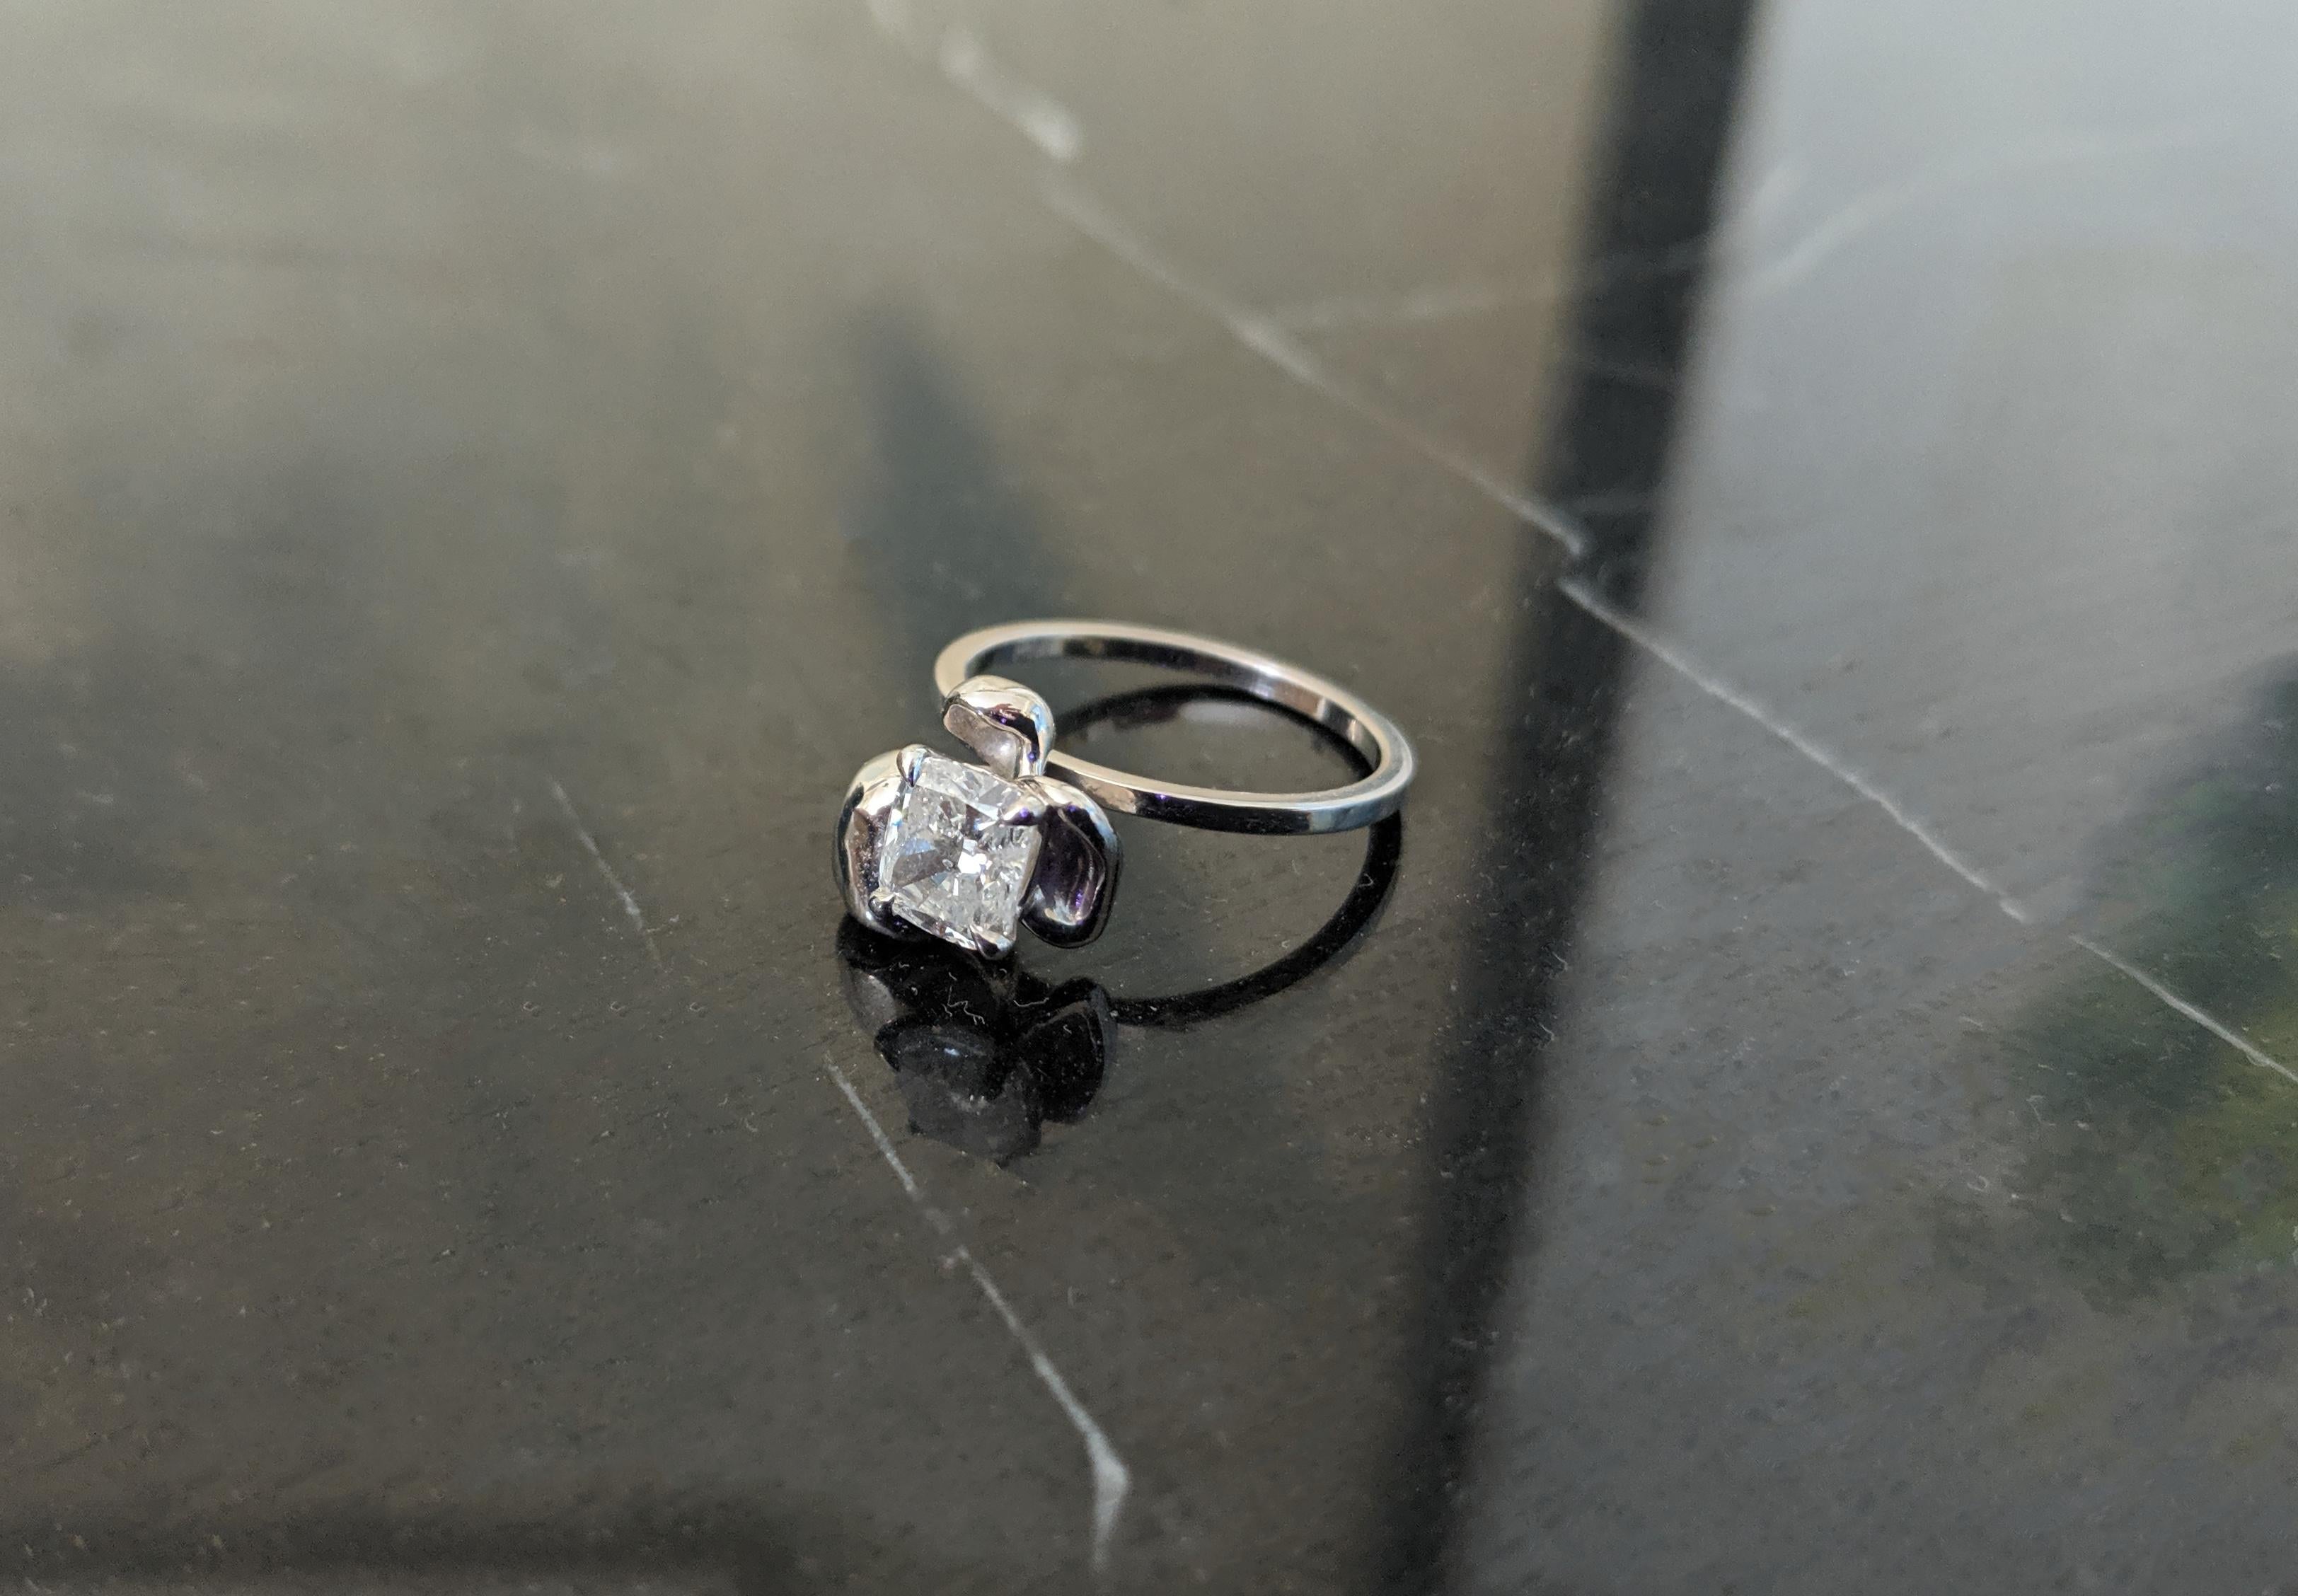 18 Karat White Gold Bridal Ring with GIA Certified 1.01 Carat Diamond 2